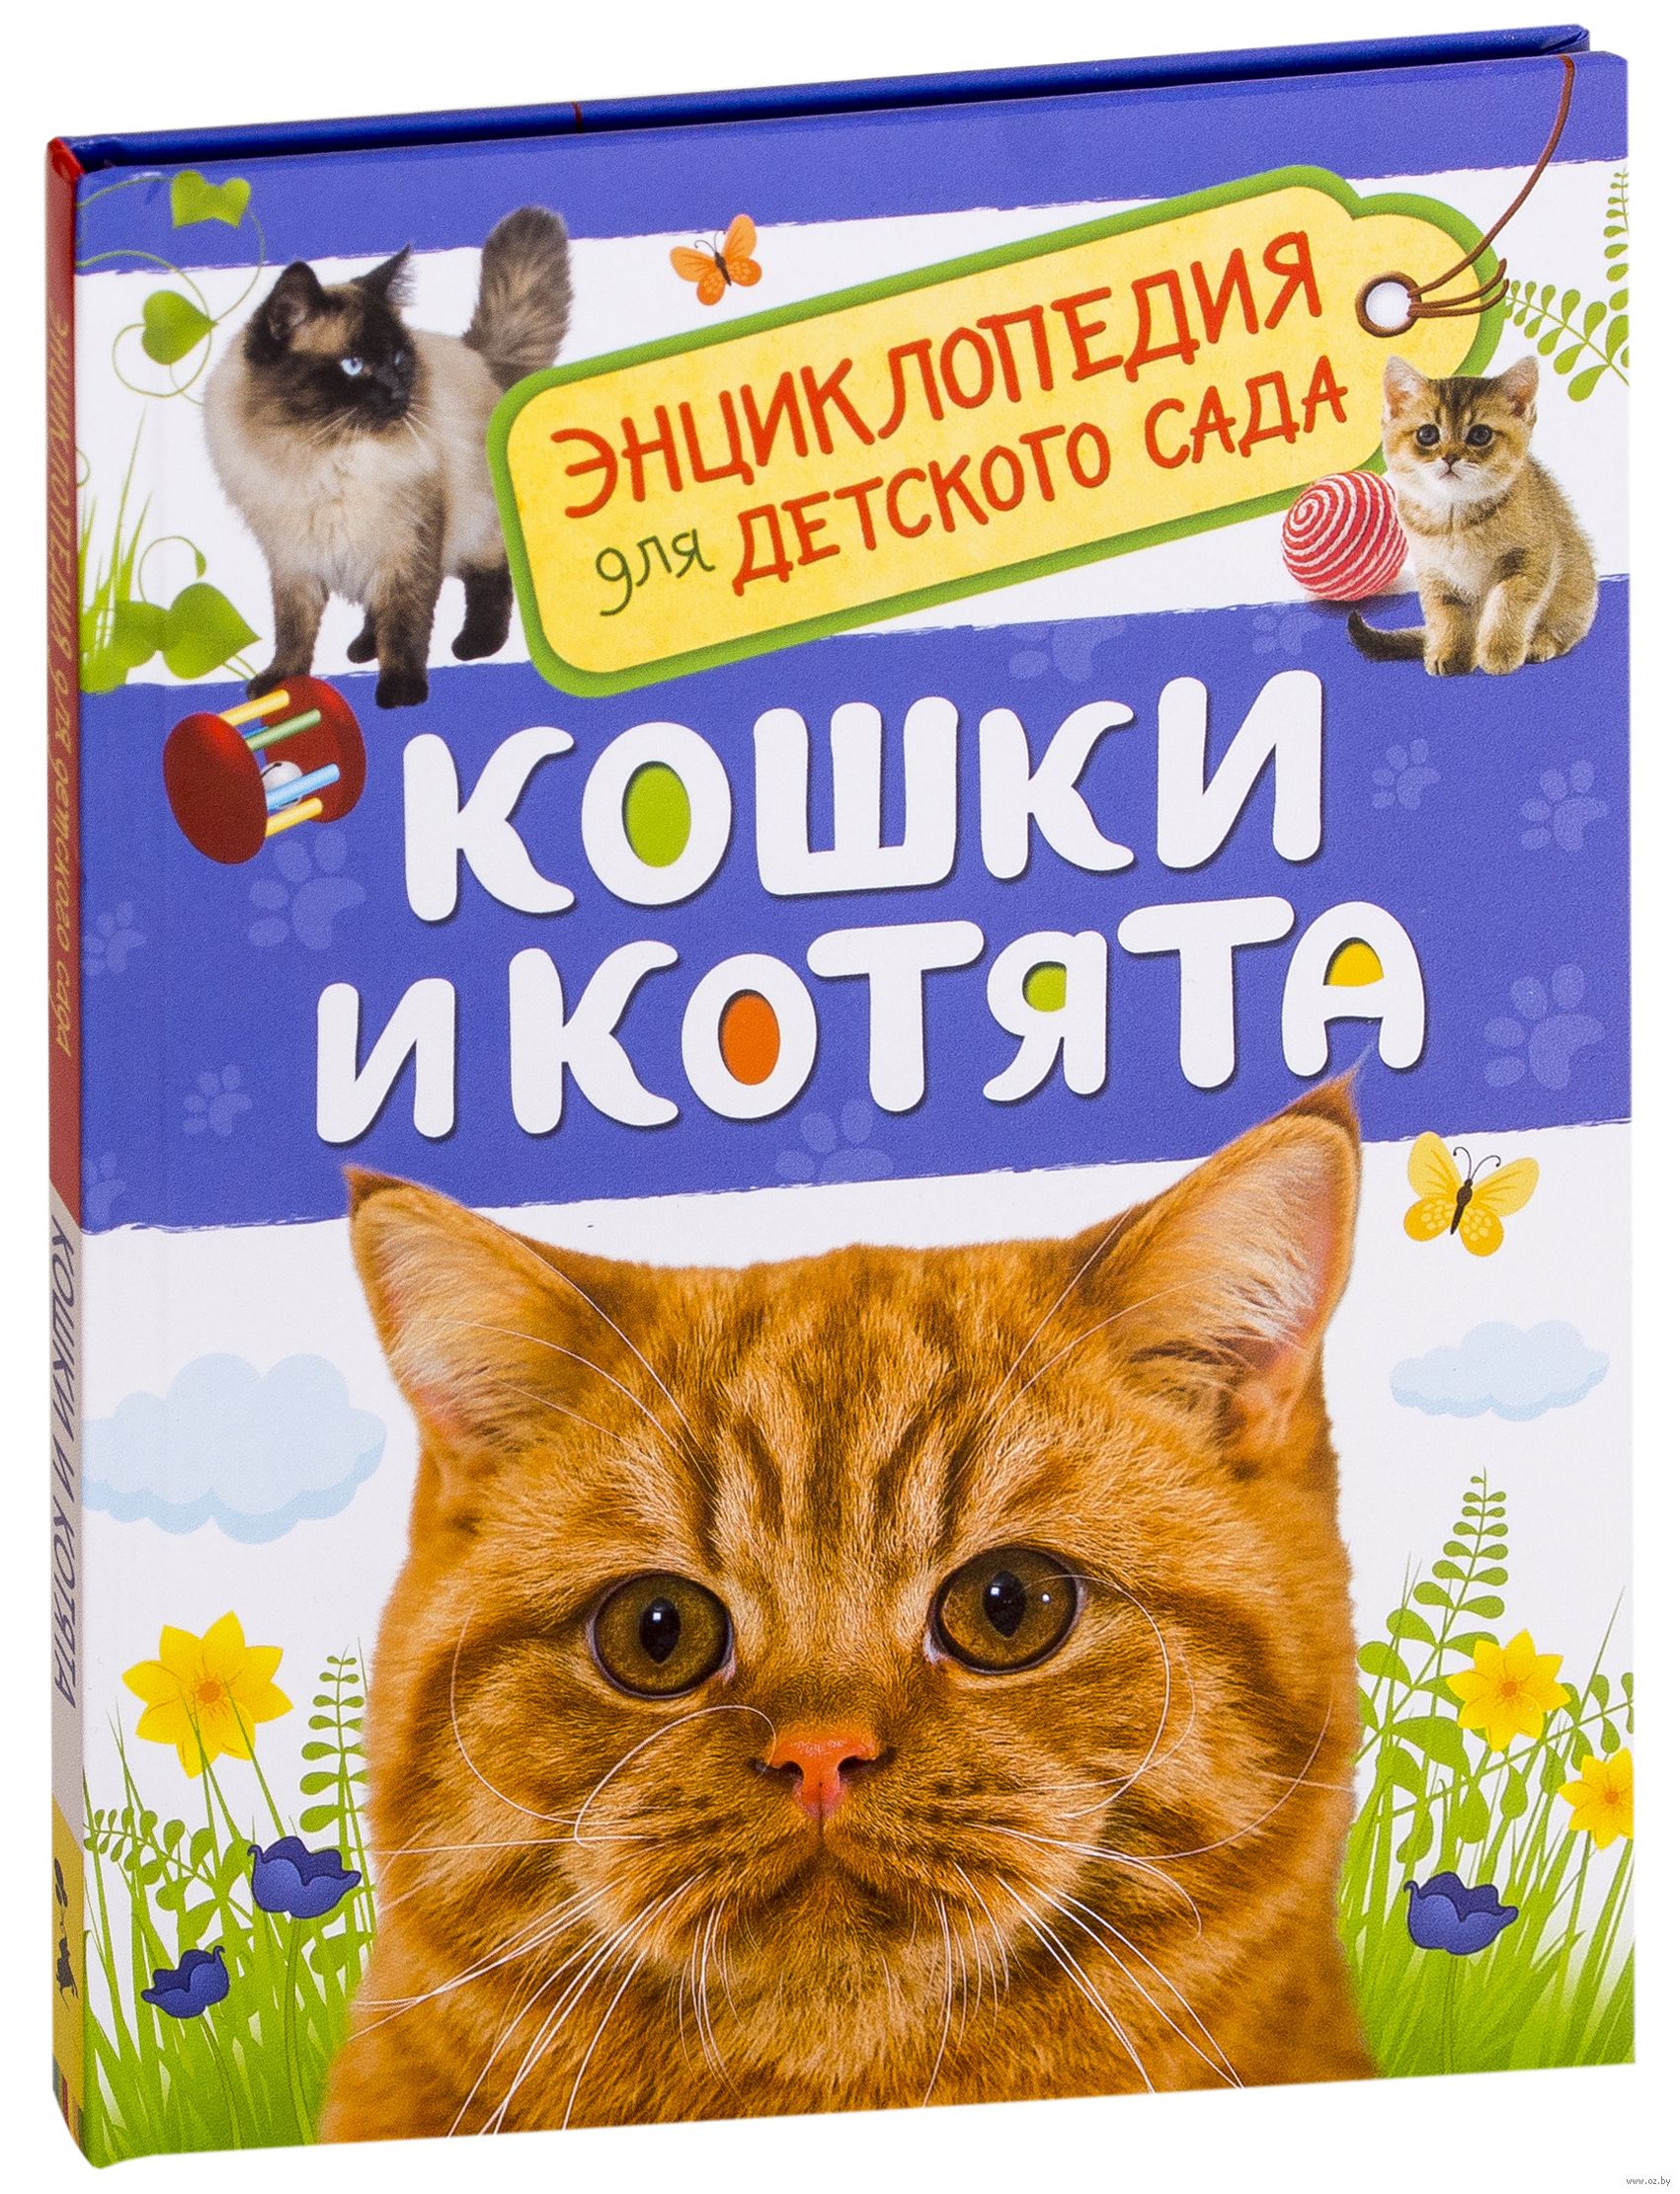 Дошкольникам про кошек. Книги про кошек. Книги про кошек для детей. Кошка с книжкой. Кошки и котята книга.